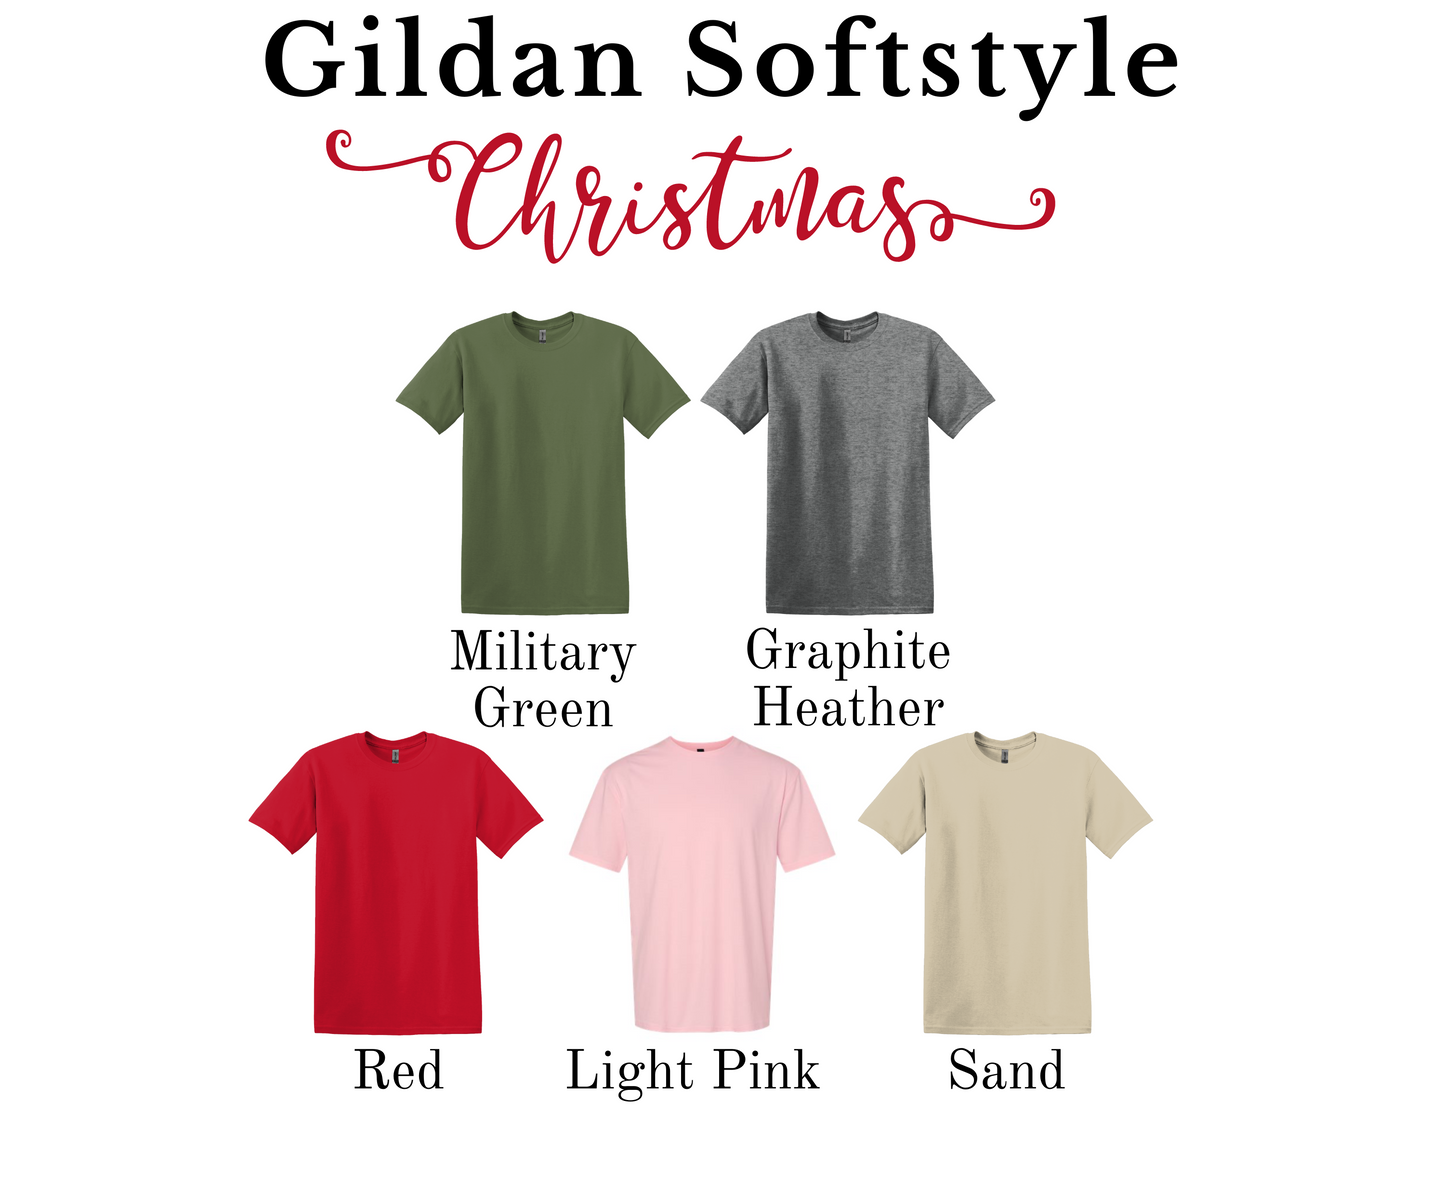 Whatever Christmas Tree Gildan Softstyle T-shirt